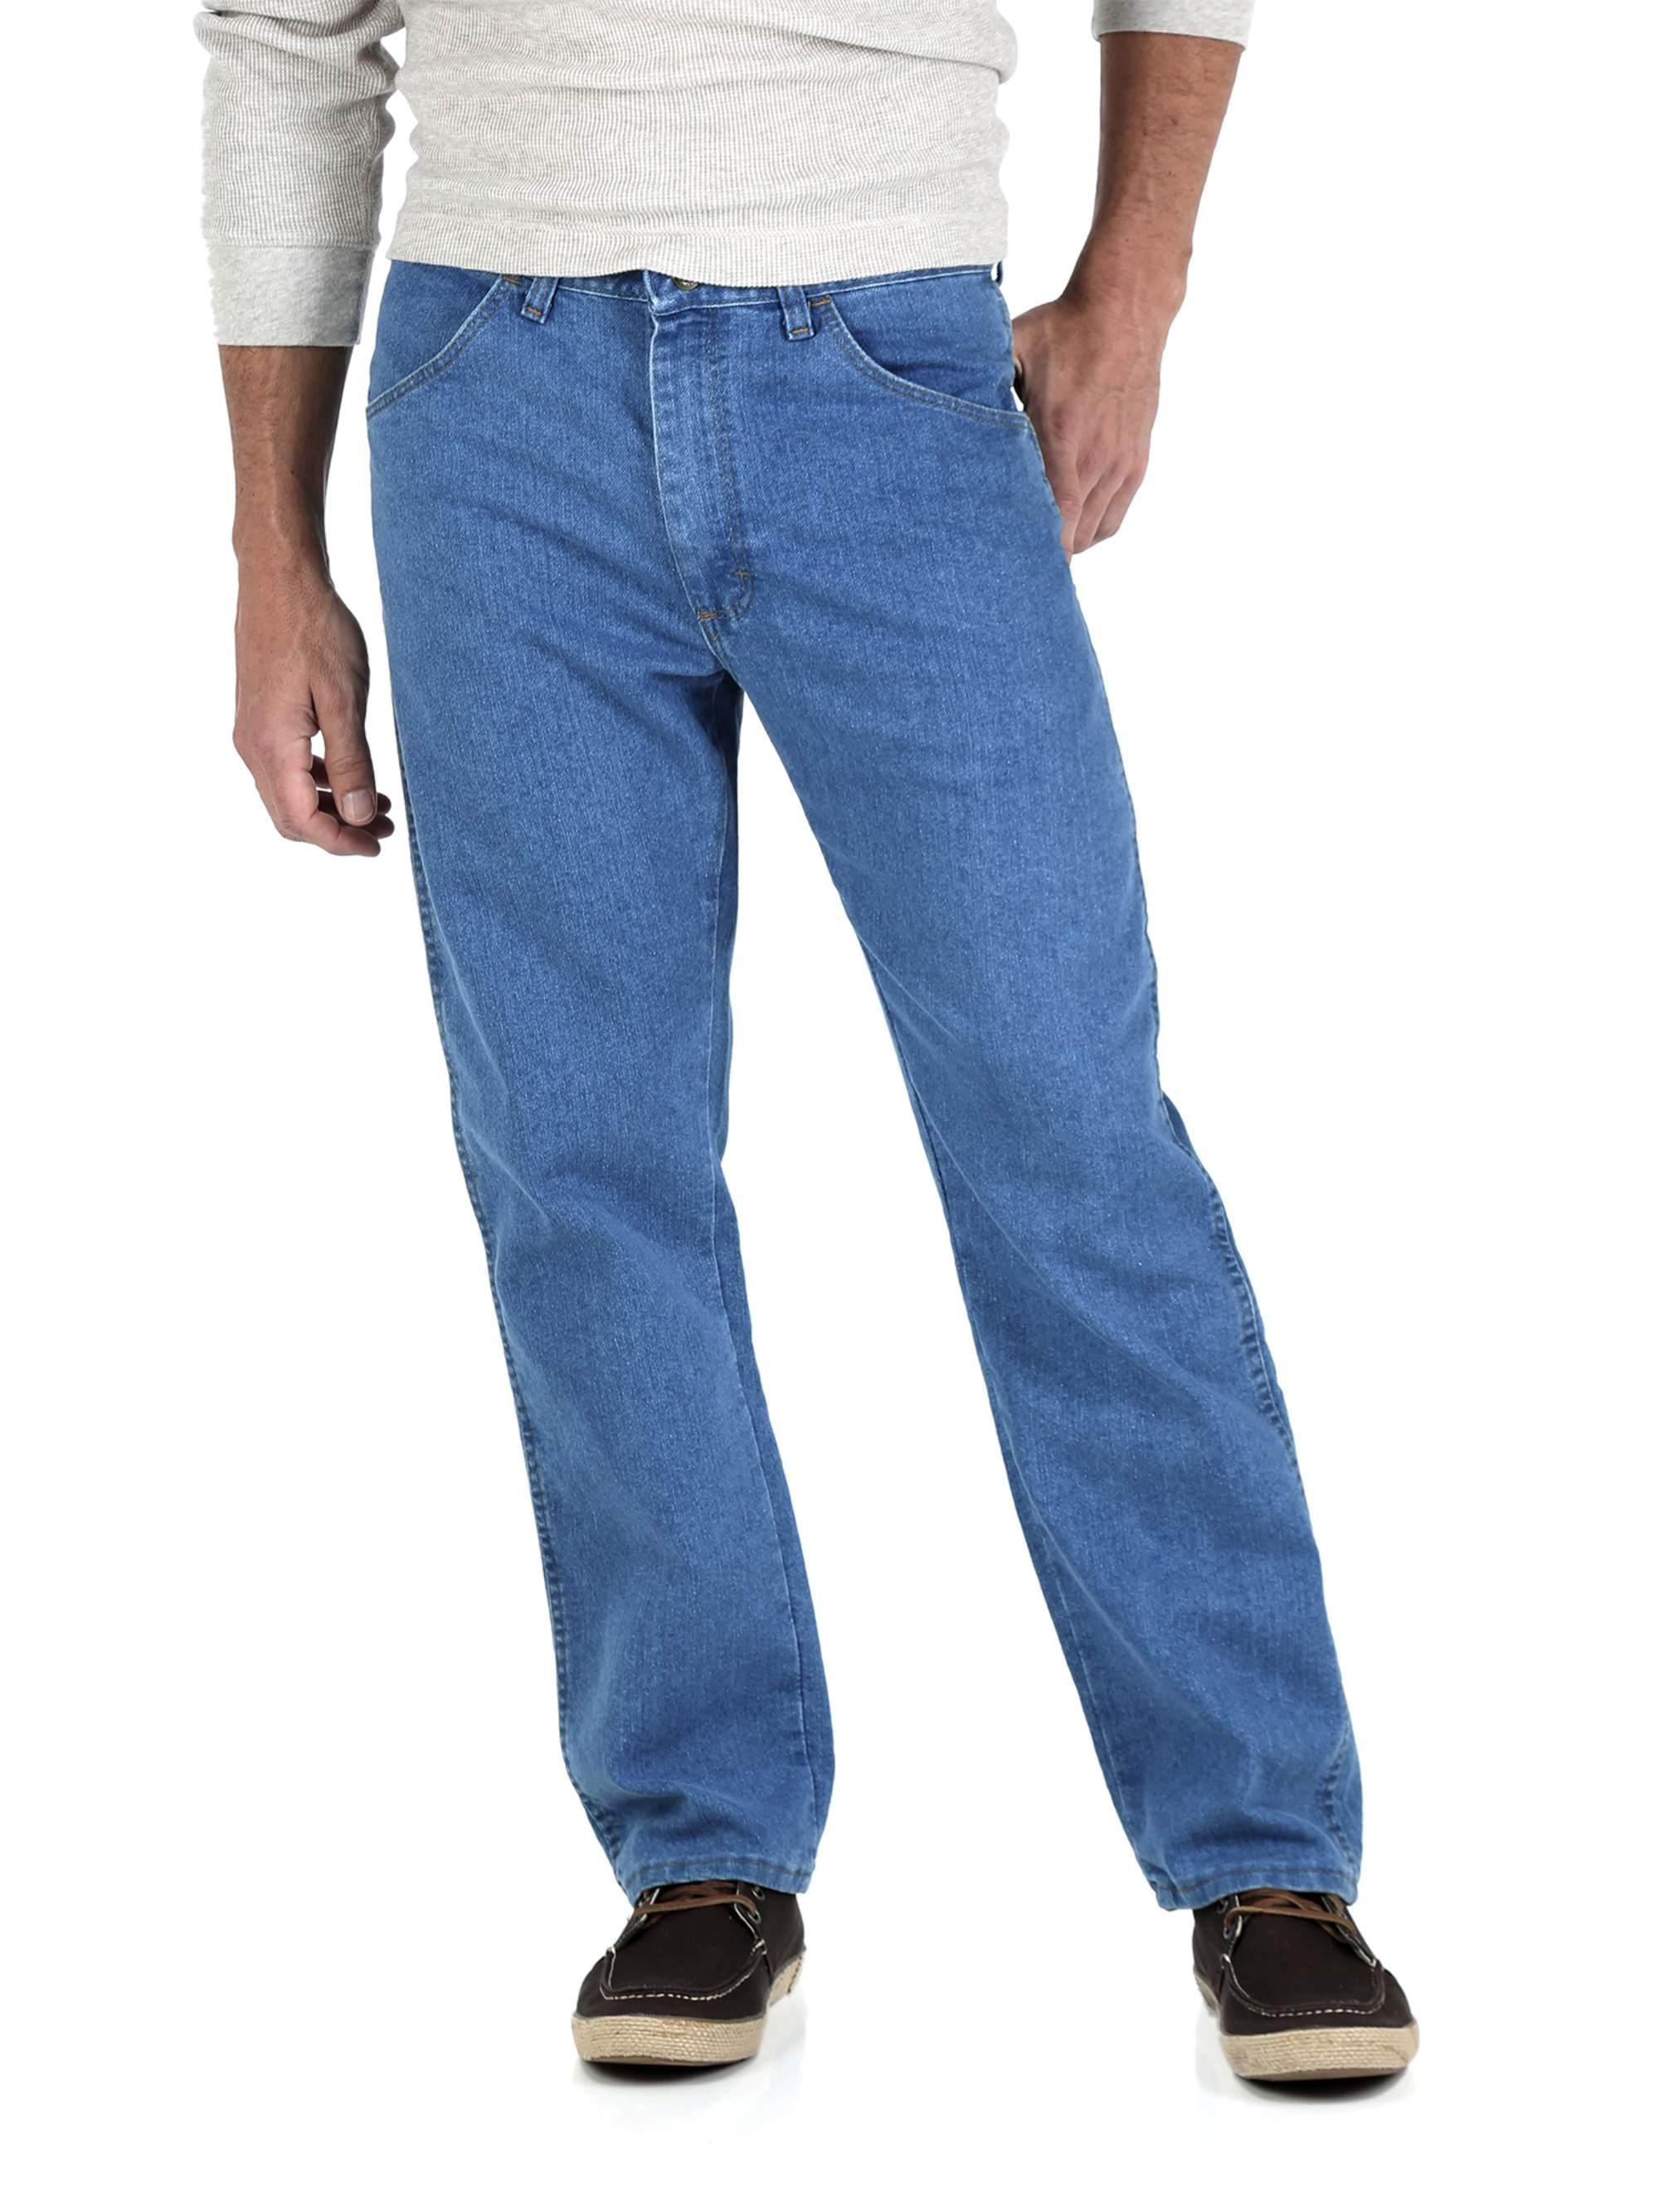 Wrangler - Wrangler Big Men's Stretch Jeans - Walmart.com